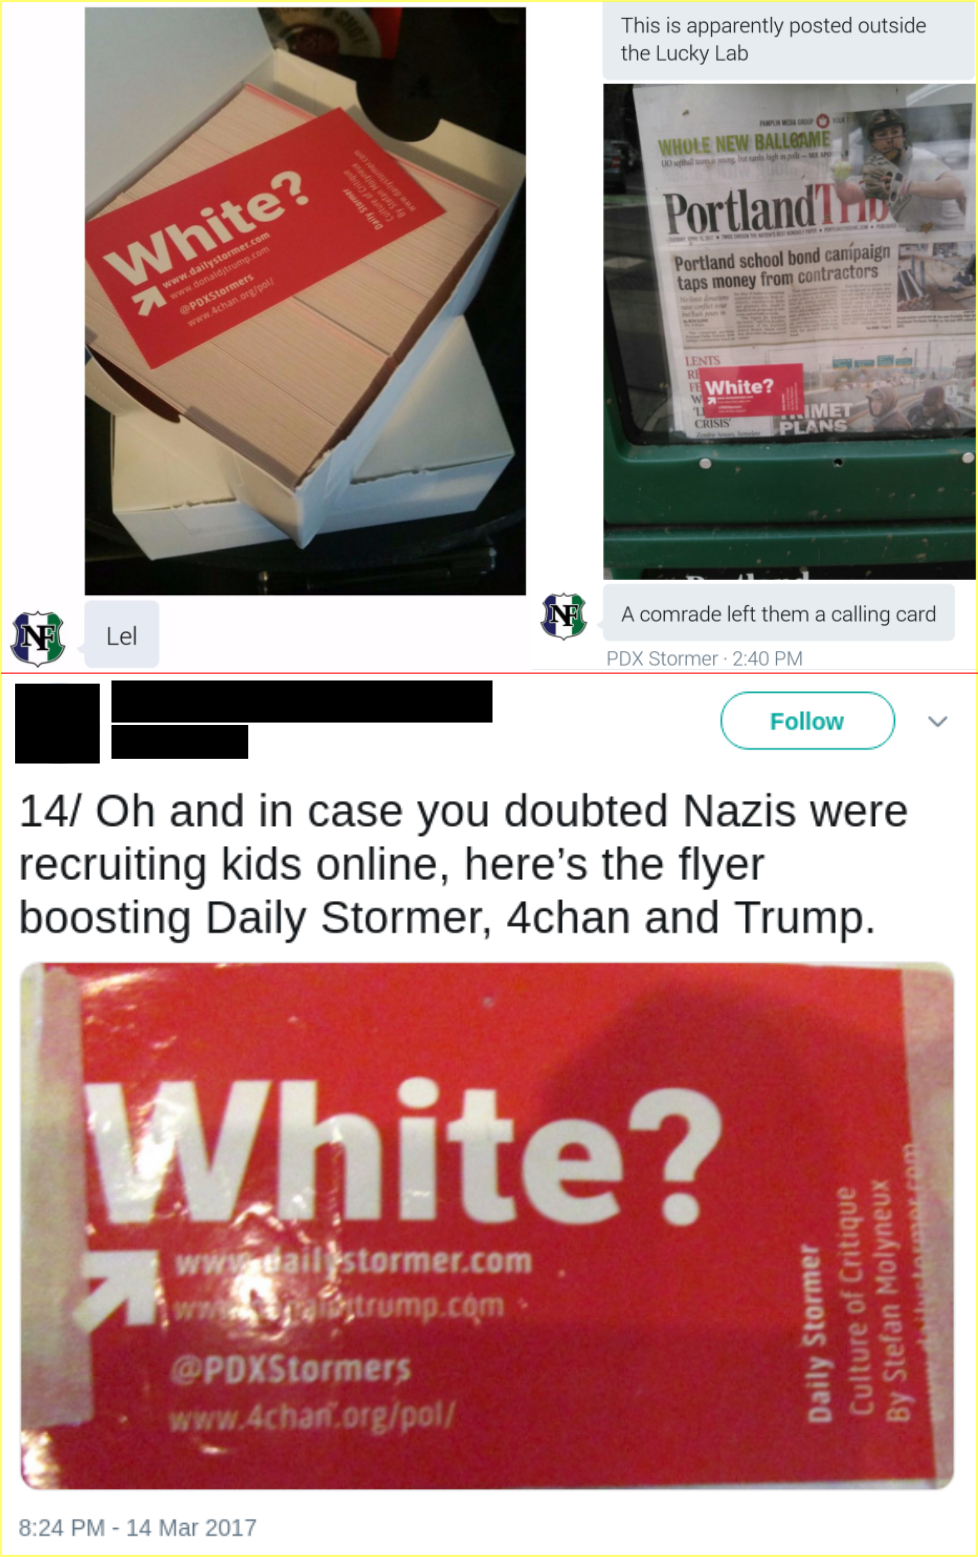 Matt Blais distributes white supremacist propaganda